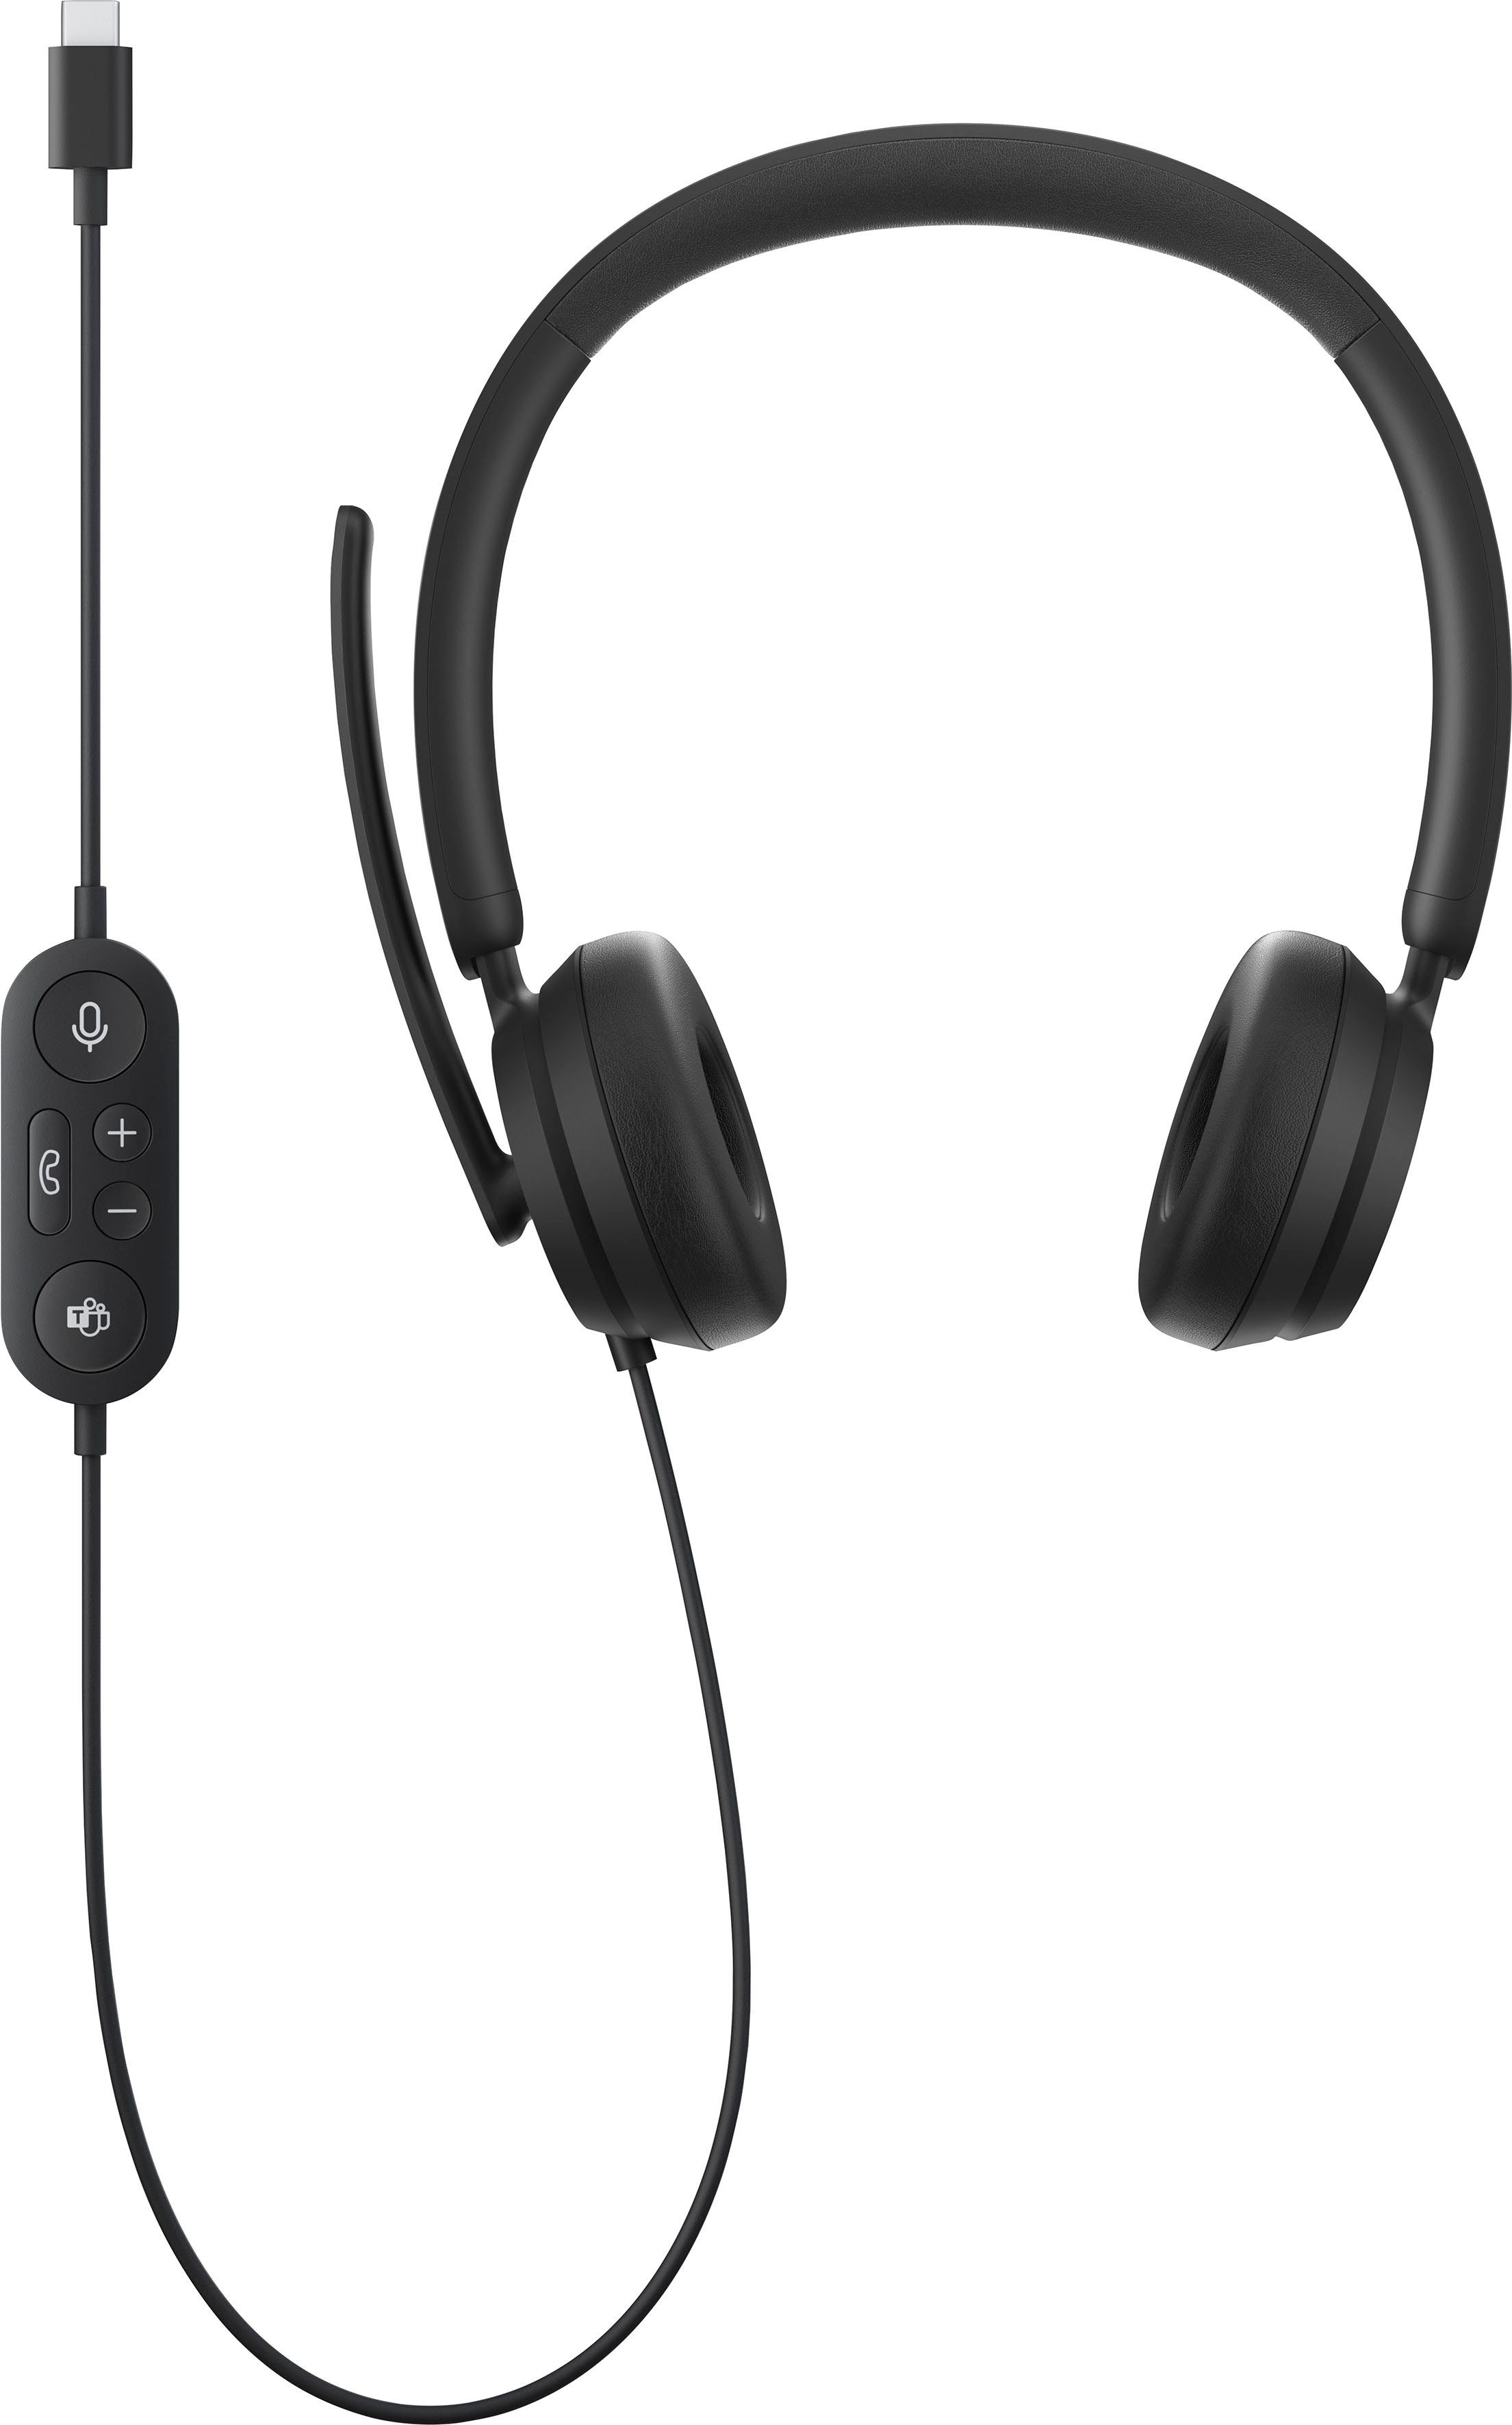 (Noise-Cancelling, Modern Musik) Steuerung Headset für On-Ear-Kopfhörer und Microsoft Anrufe USB-C integrierte